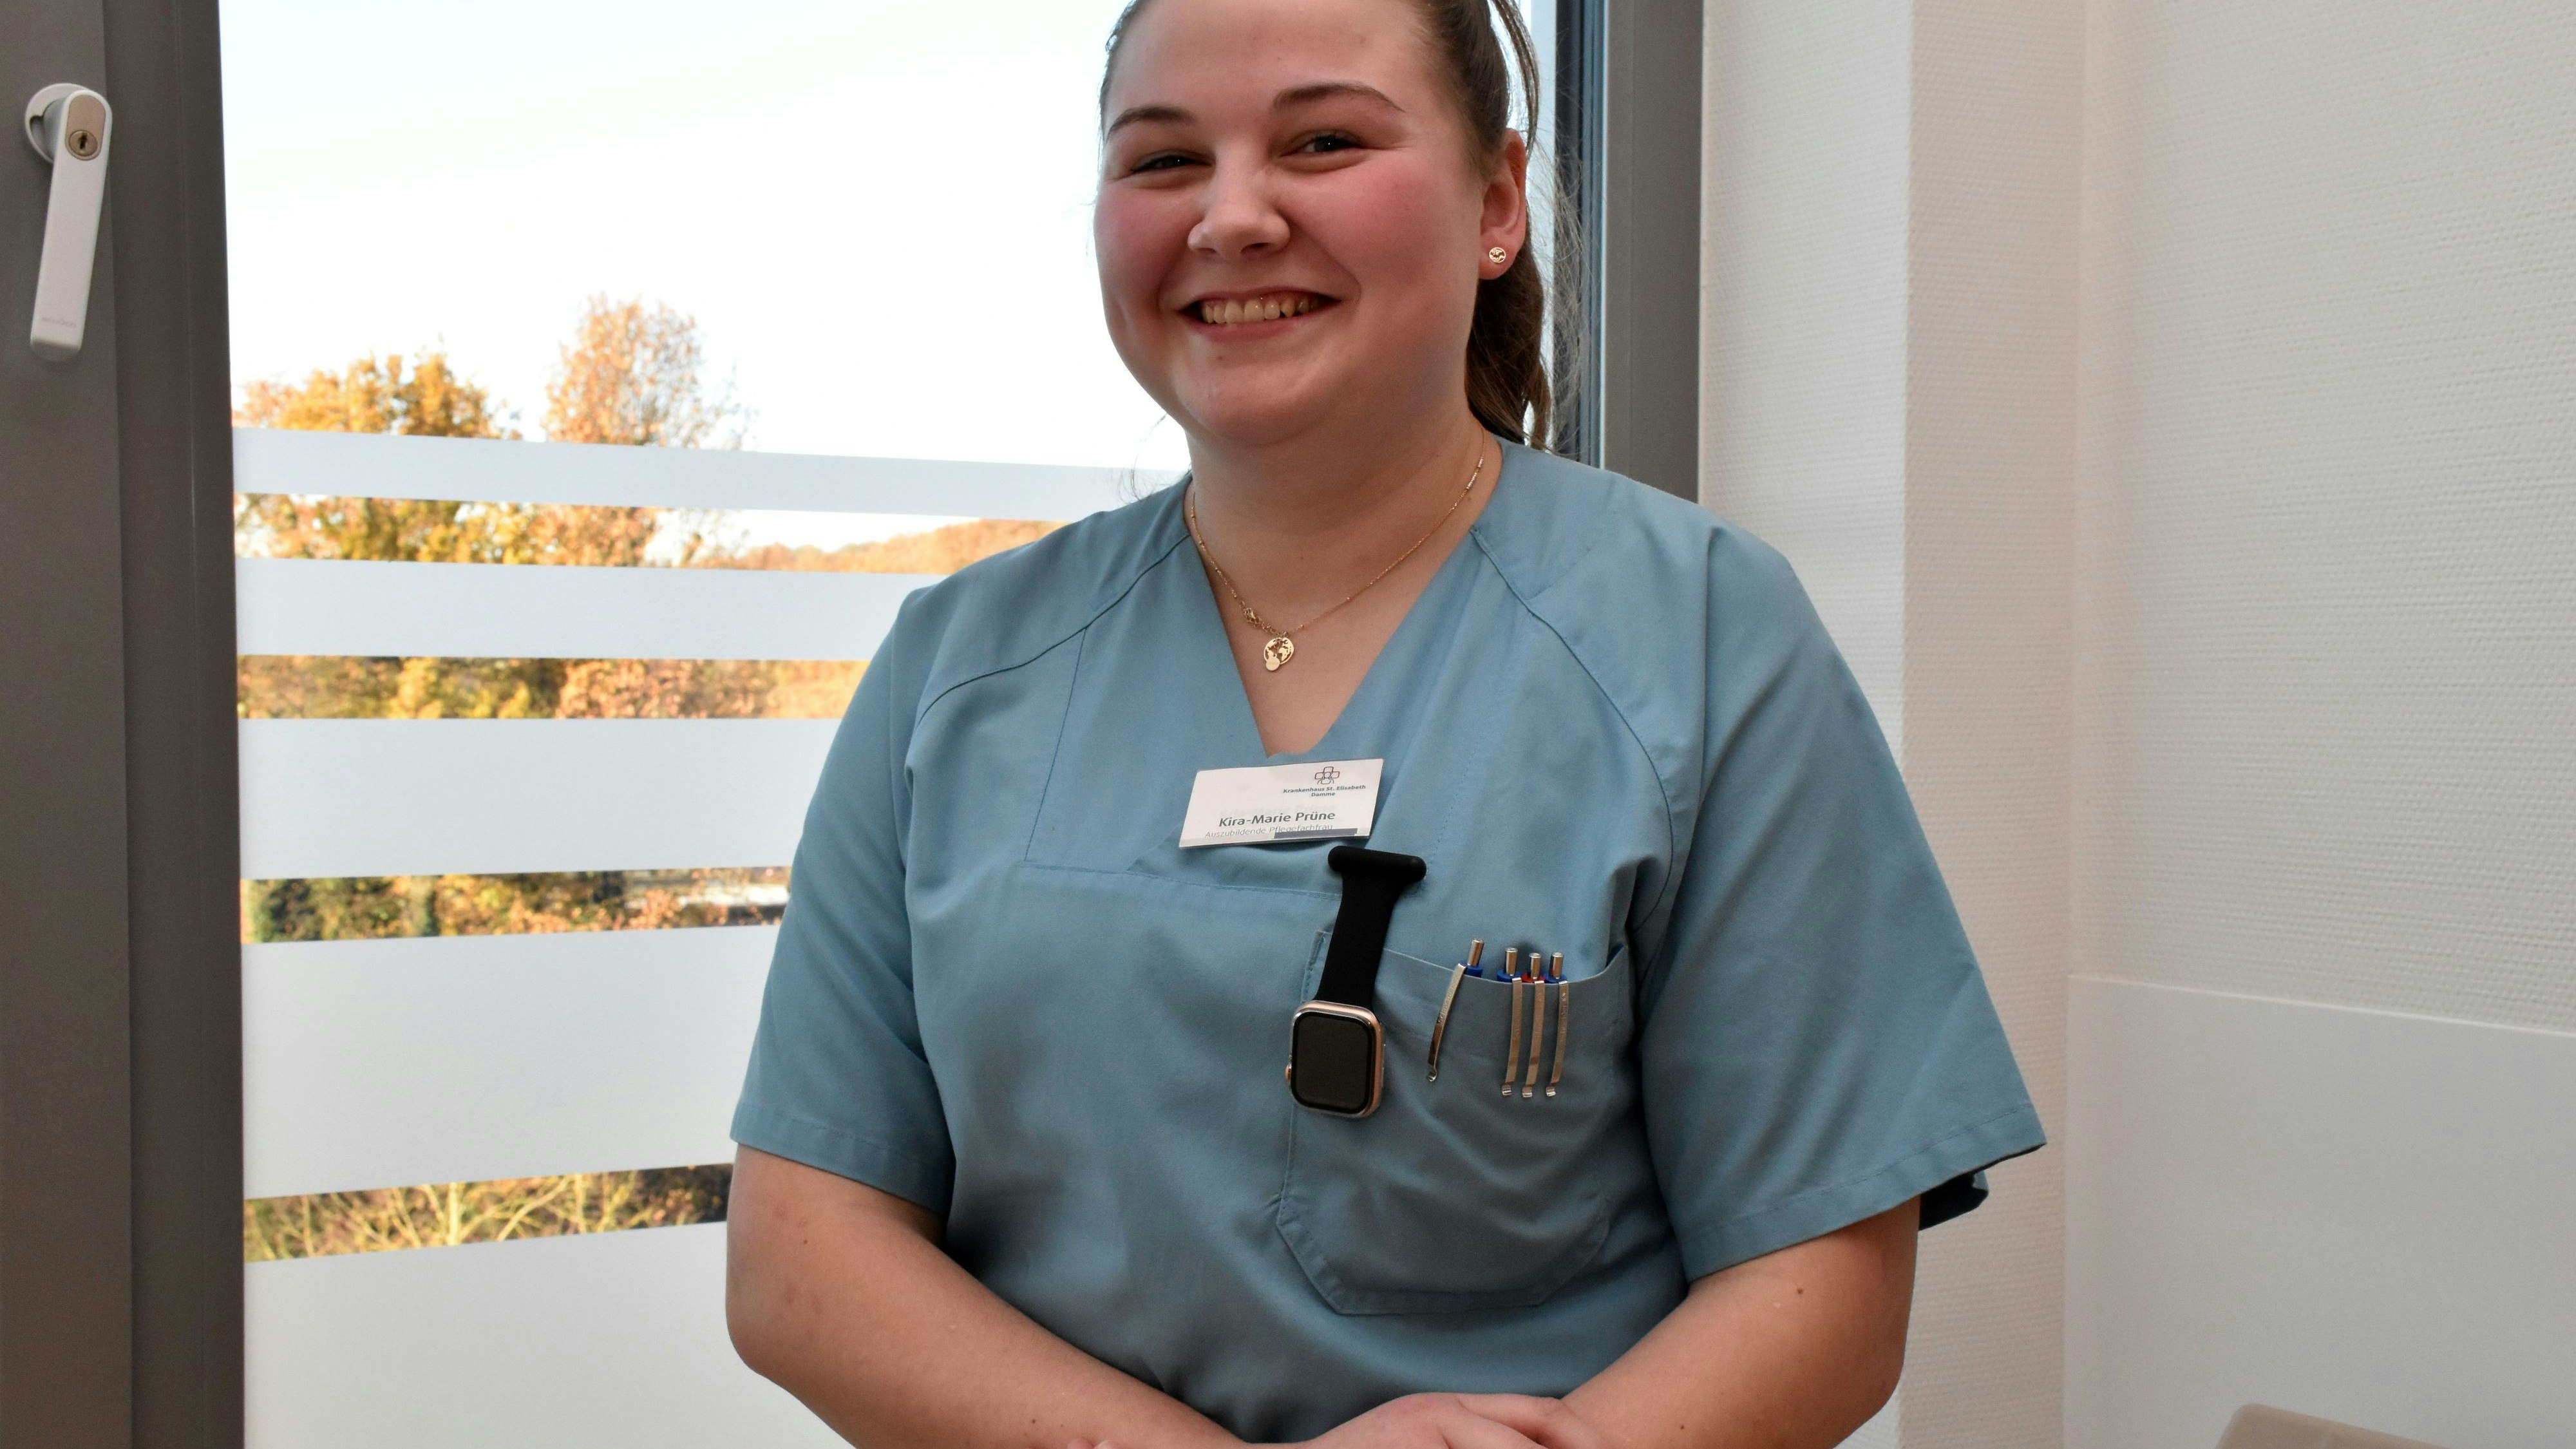 Mit viel Begeisterung und Engagement hat Kira-Marie Prüne ihre Ausbildung zur Pflegefachfrau begonnen. Foto: Berg